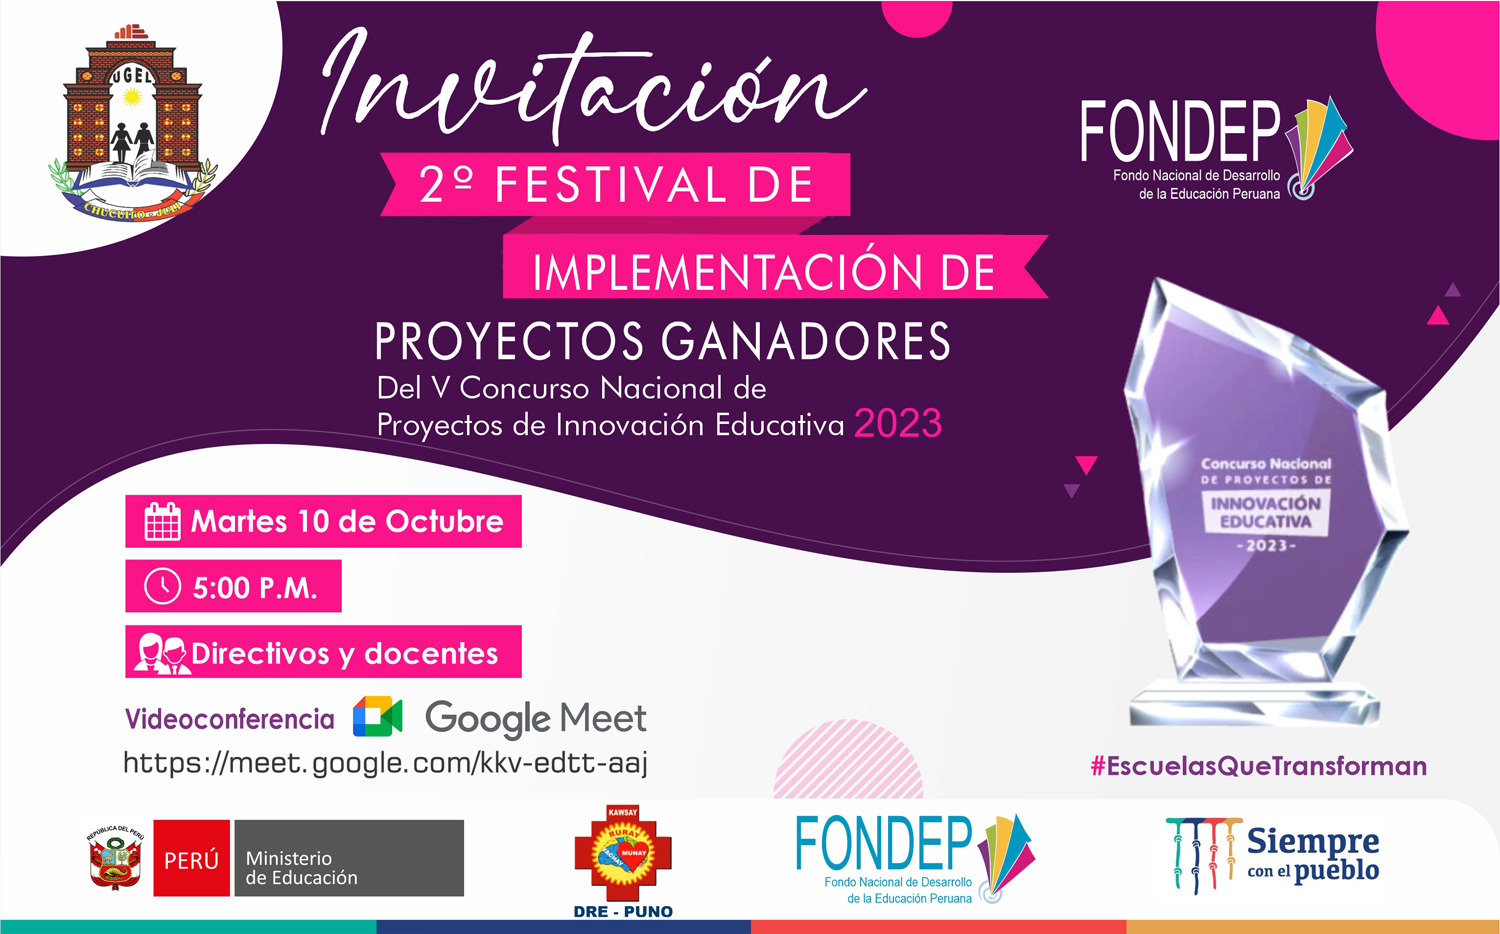 Invitación al 2° Festival de Innovación Educativa | VCNPIE FONDEP